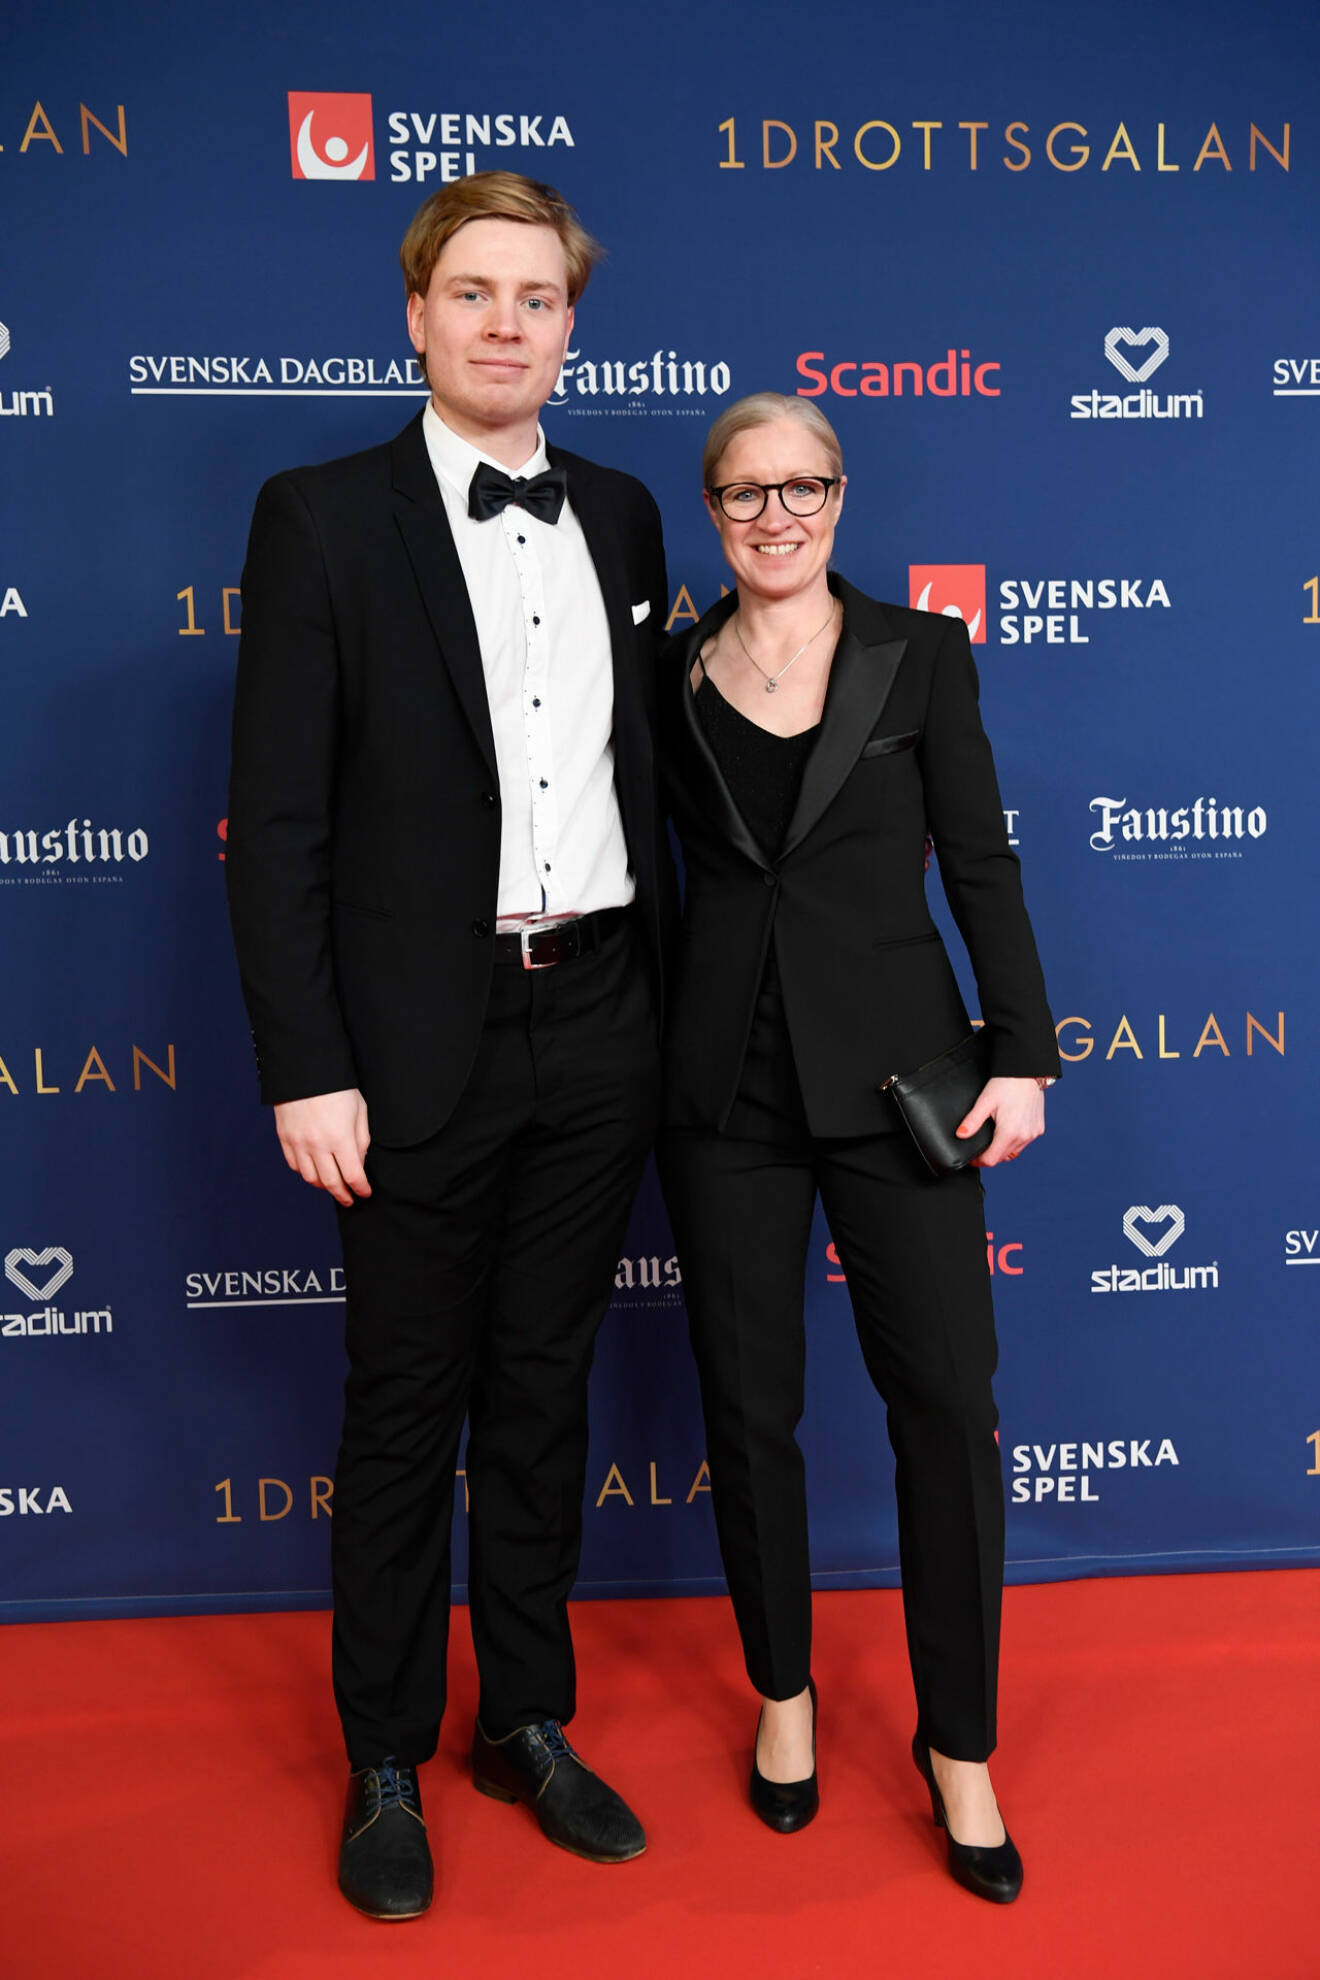 Victoria Sandell Svensson med sällskap på röda mattan på Idrottsgalan 2020